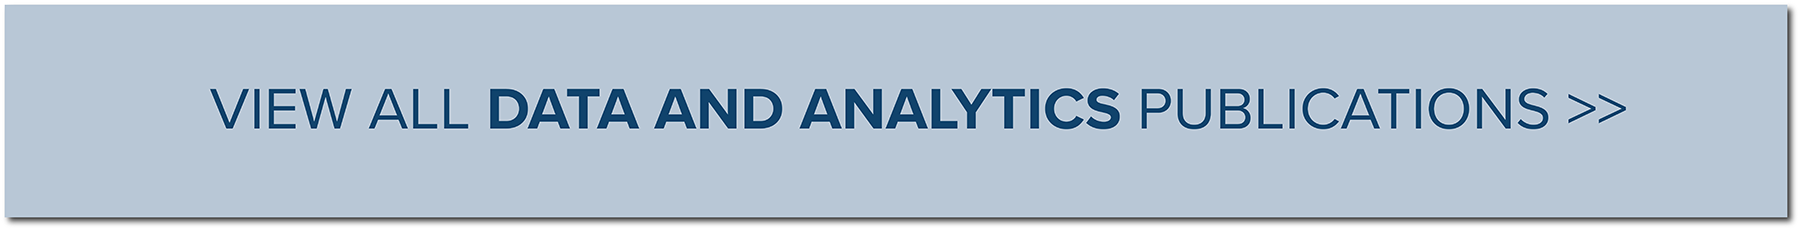 Data and Analytics